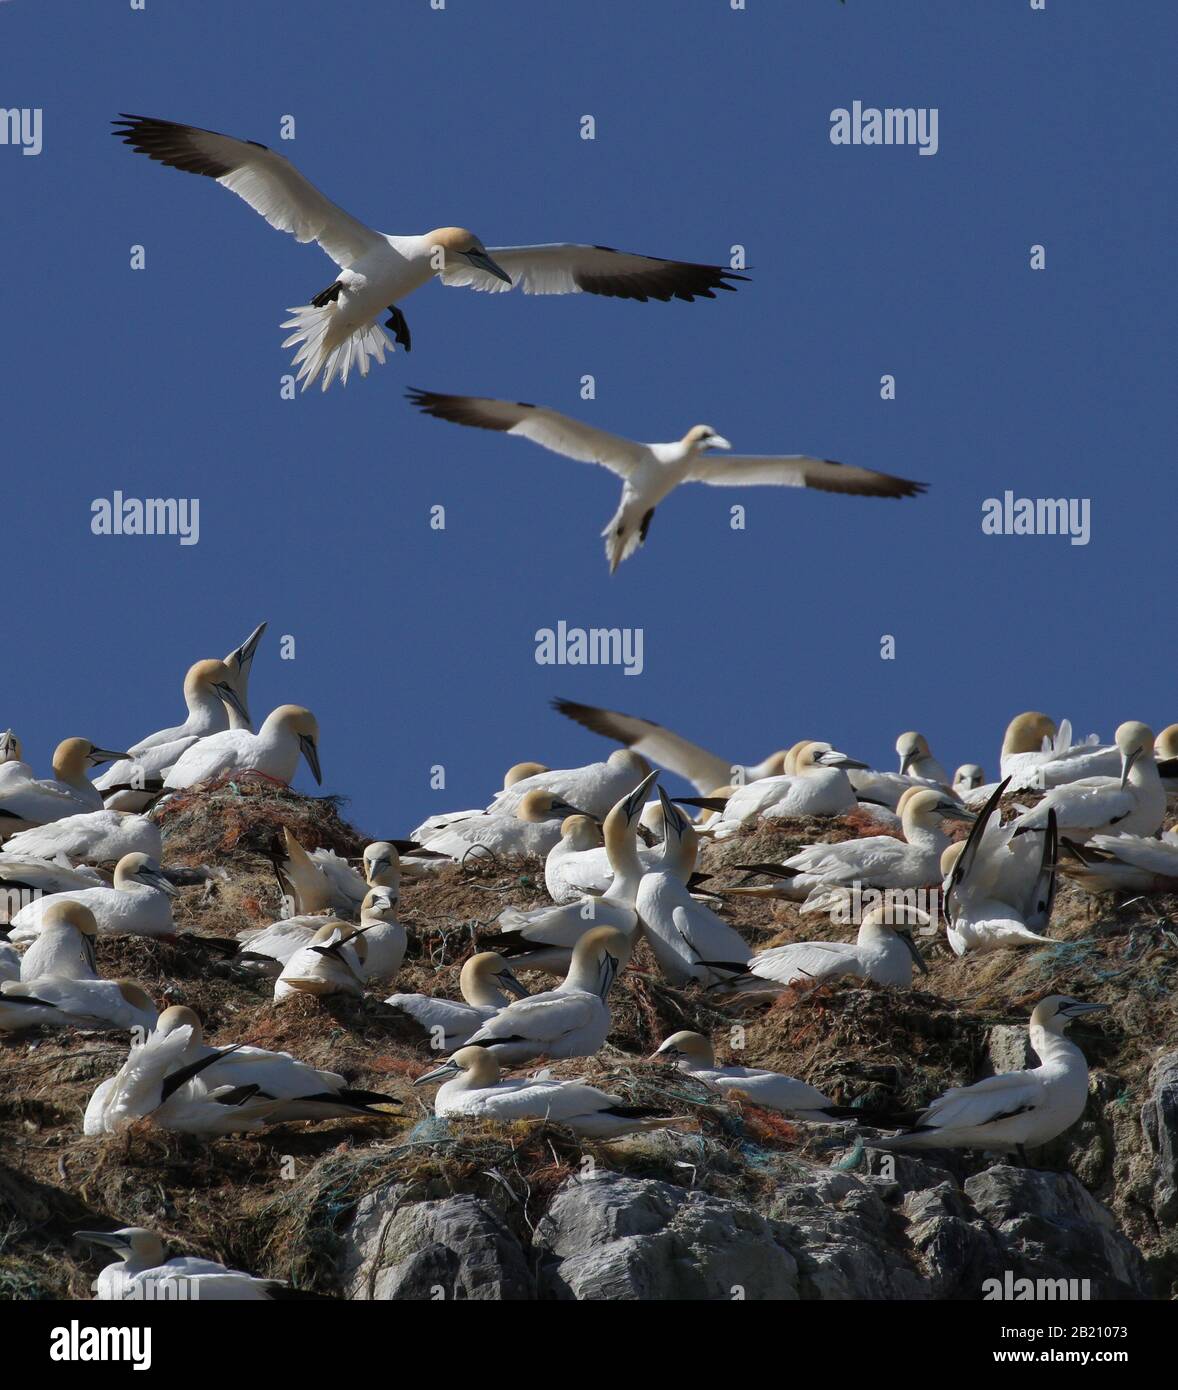 Una colección de gannets, Morus bassanus, anidando en nidos hechos de diferentes tipos de plástico incluyendo Ropes, redes de pesca descartadas. Grassholme Reino Unido Foto de stock